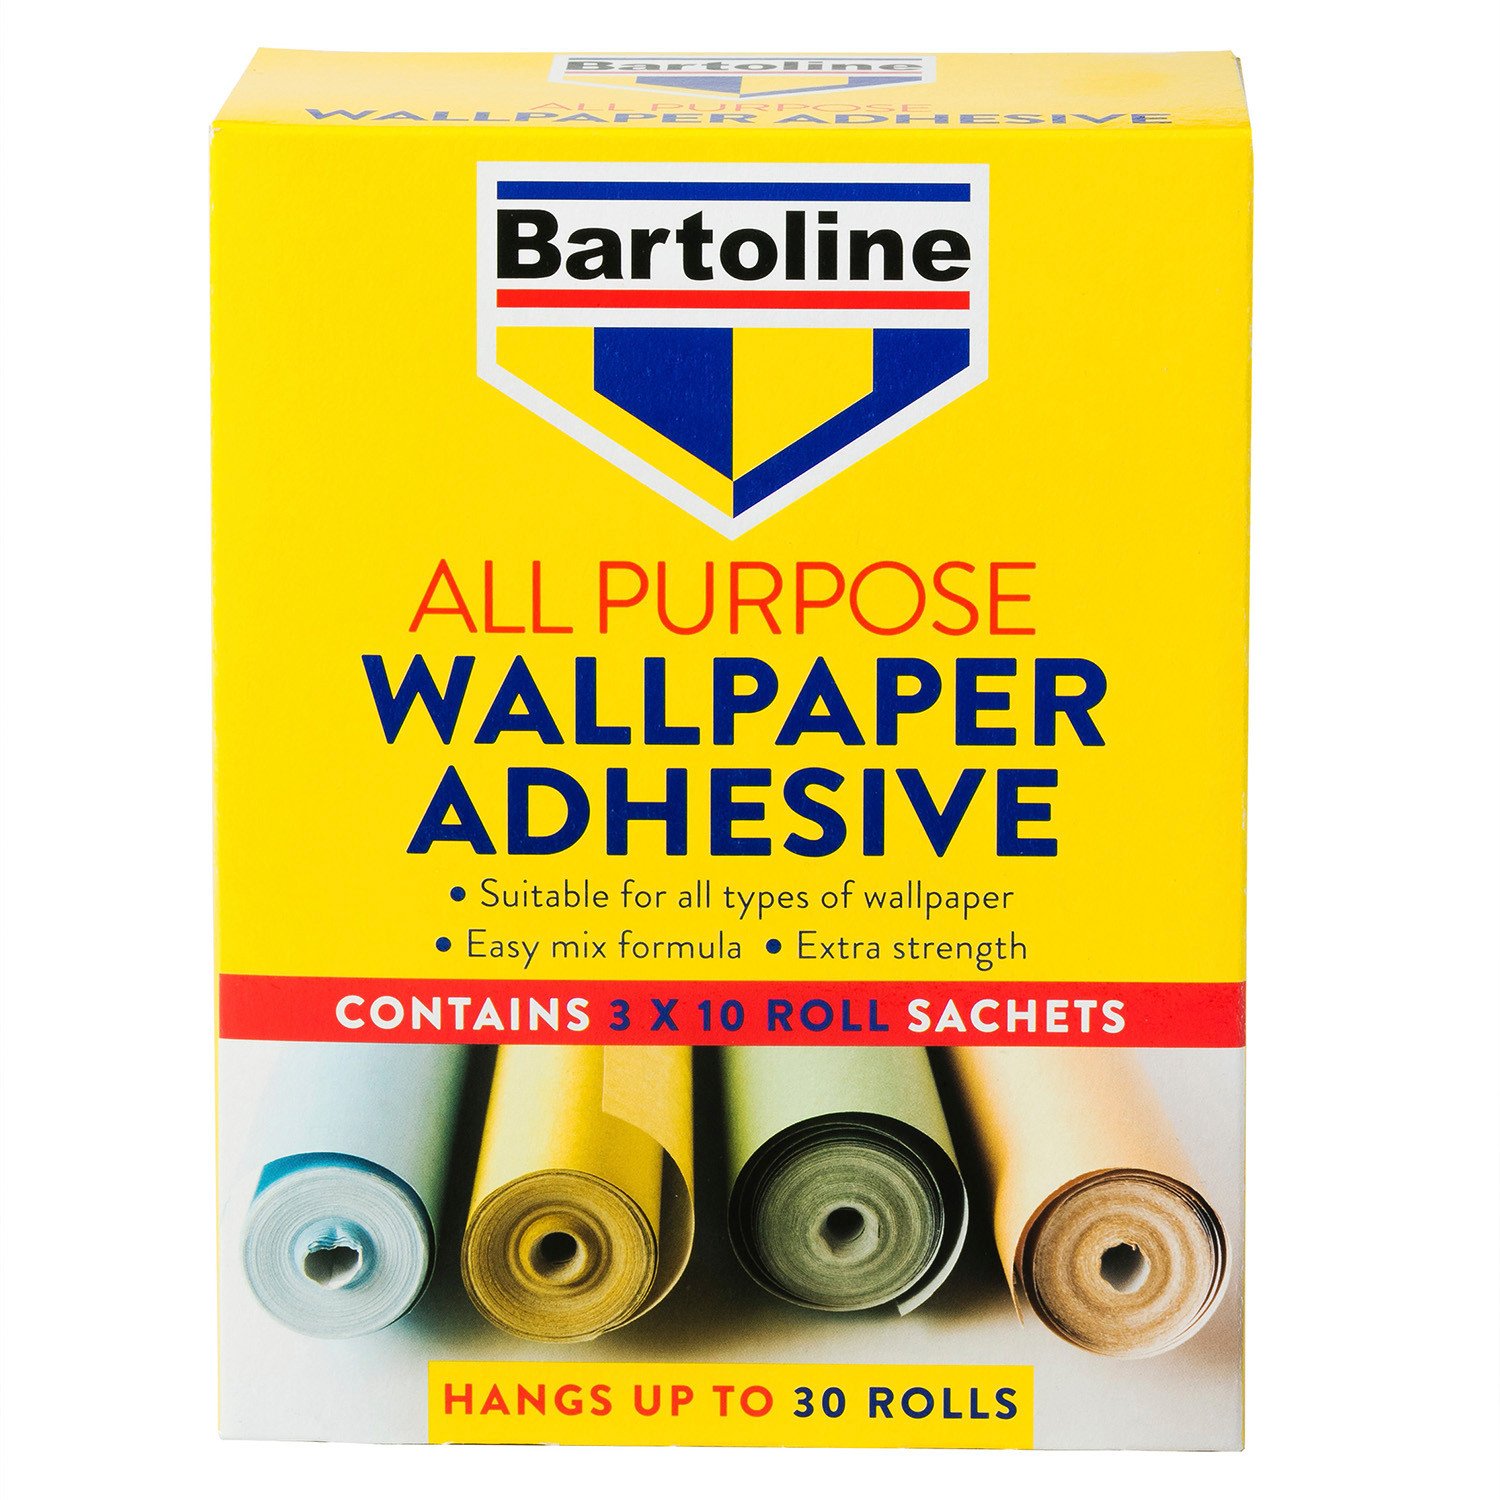 Bartoline All Purpose Wallpaper Adhesive Sachet 95g 30 Pack Image